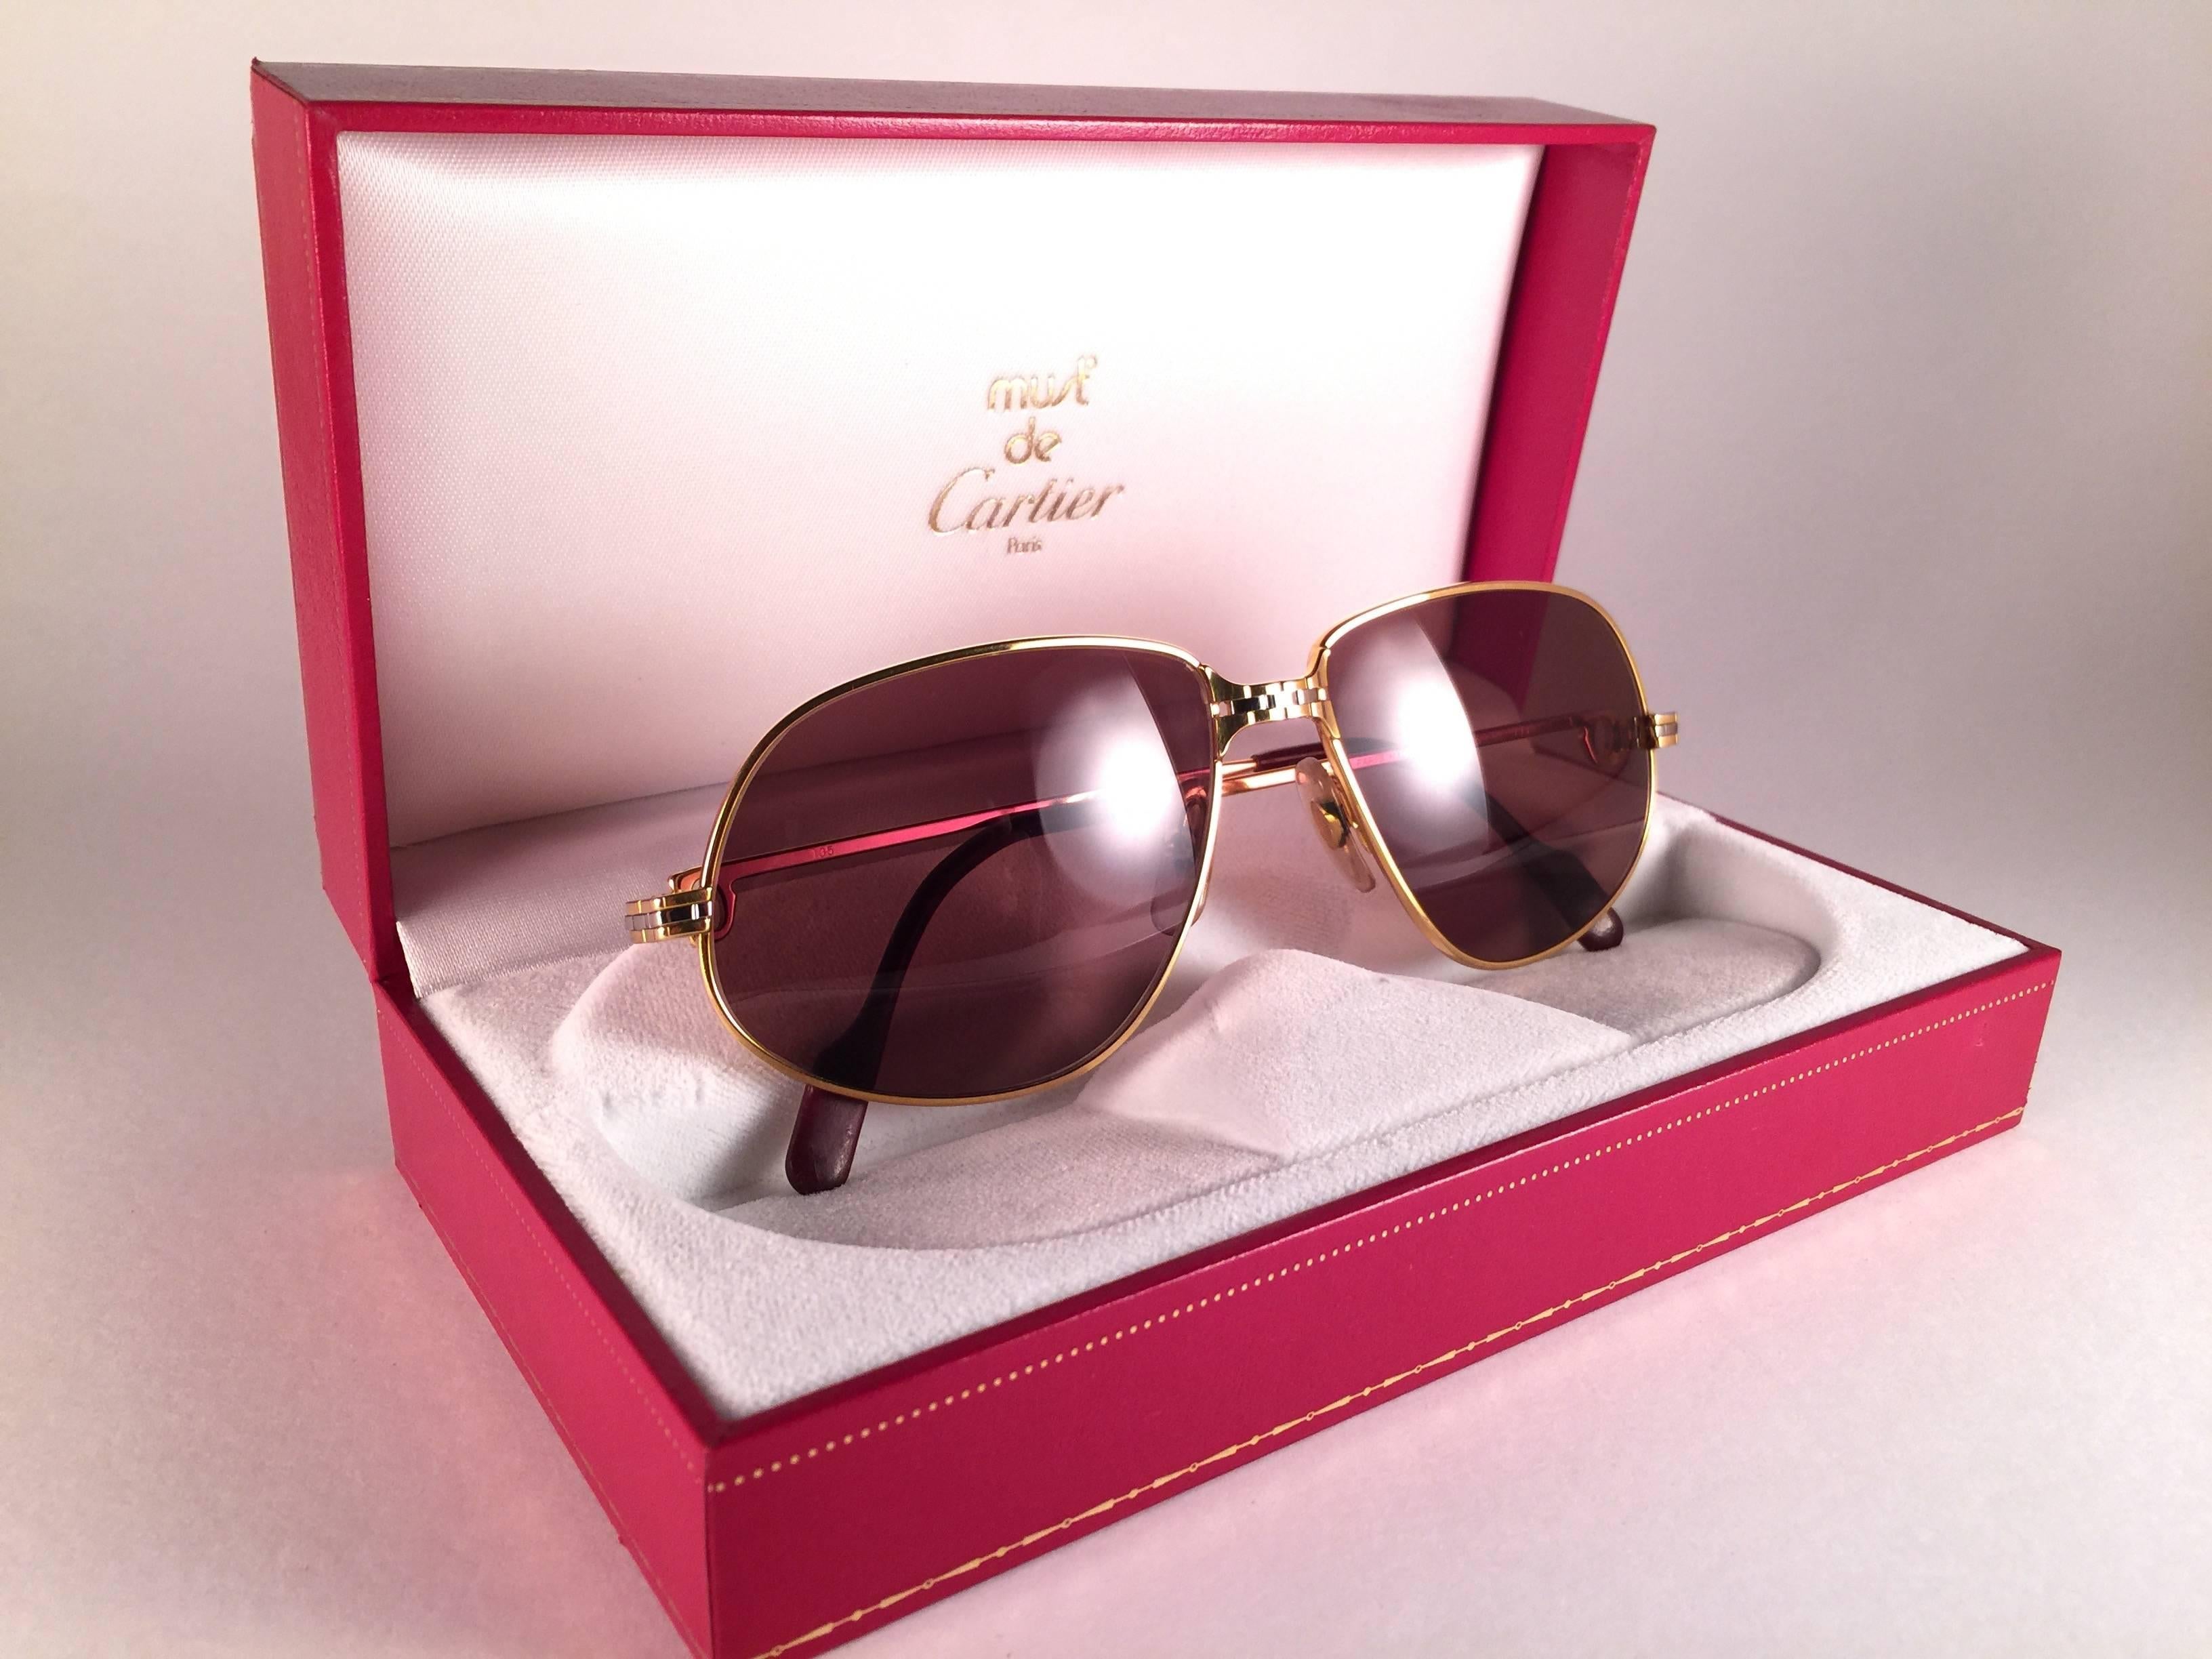 1988 Cartier Panthere Sonnenbrille mit braunen (uv-Schutz) Gläsern.  Der Rahmen ist mit der Vorderseite und den Seiten in Gelb- und Weißgold. Alle Punzierungen. burgunderfarbene Ohrpolster. 
Beide Arme tragen das C von Cartier auf der Schläfe. 
Mit